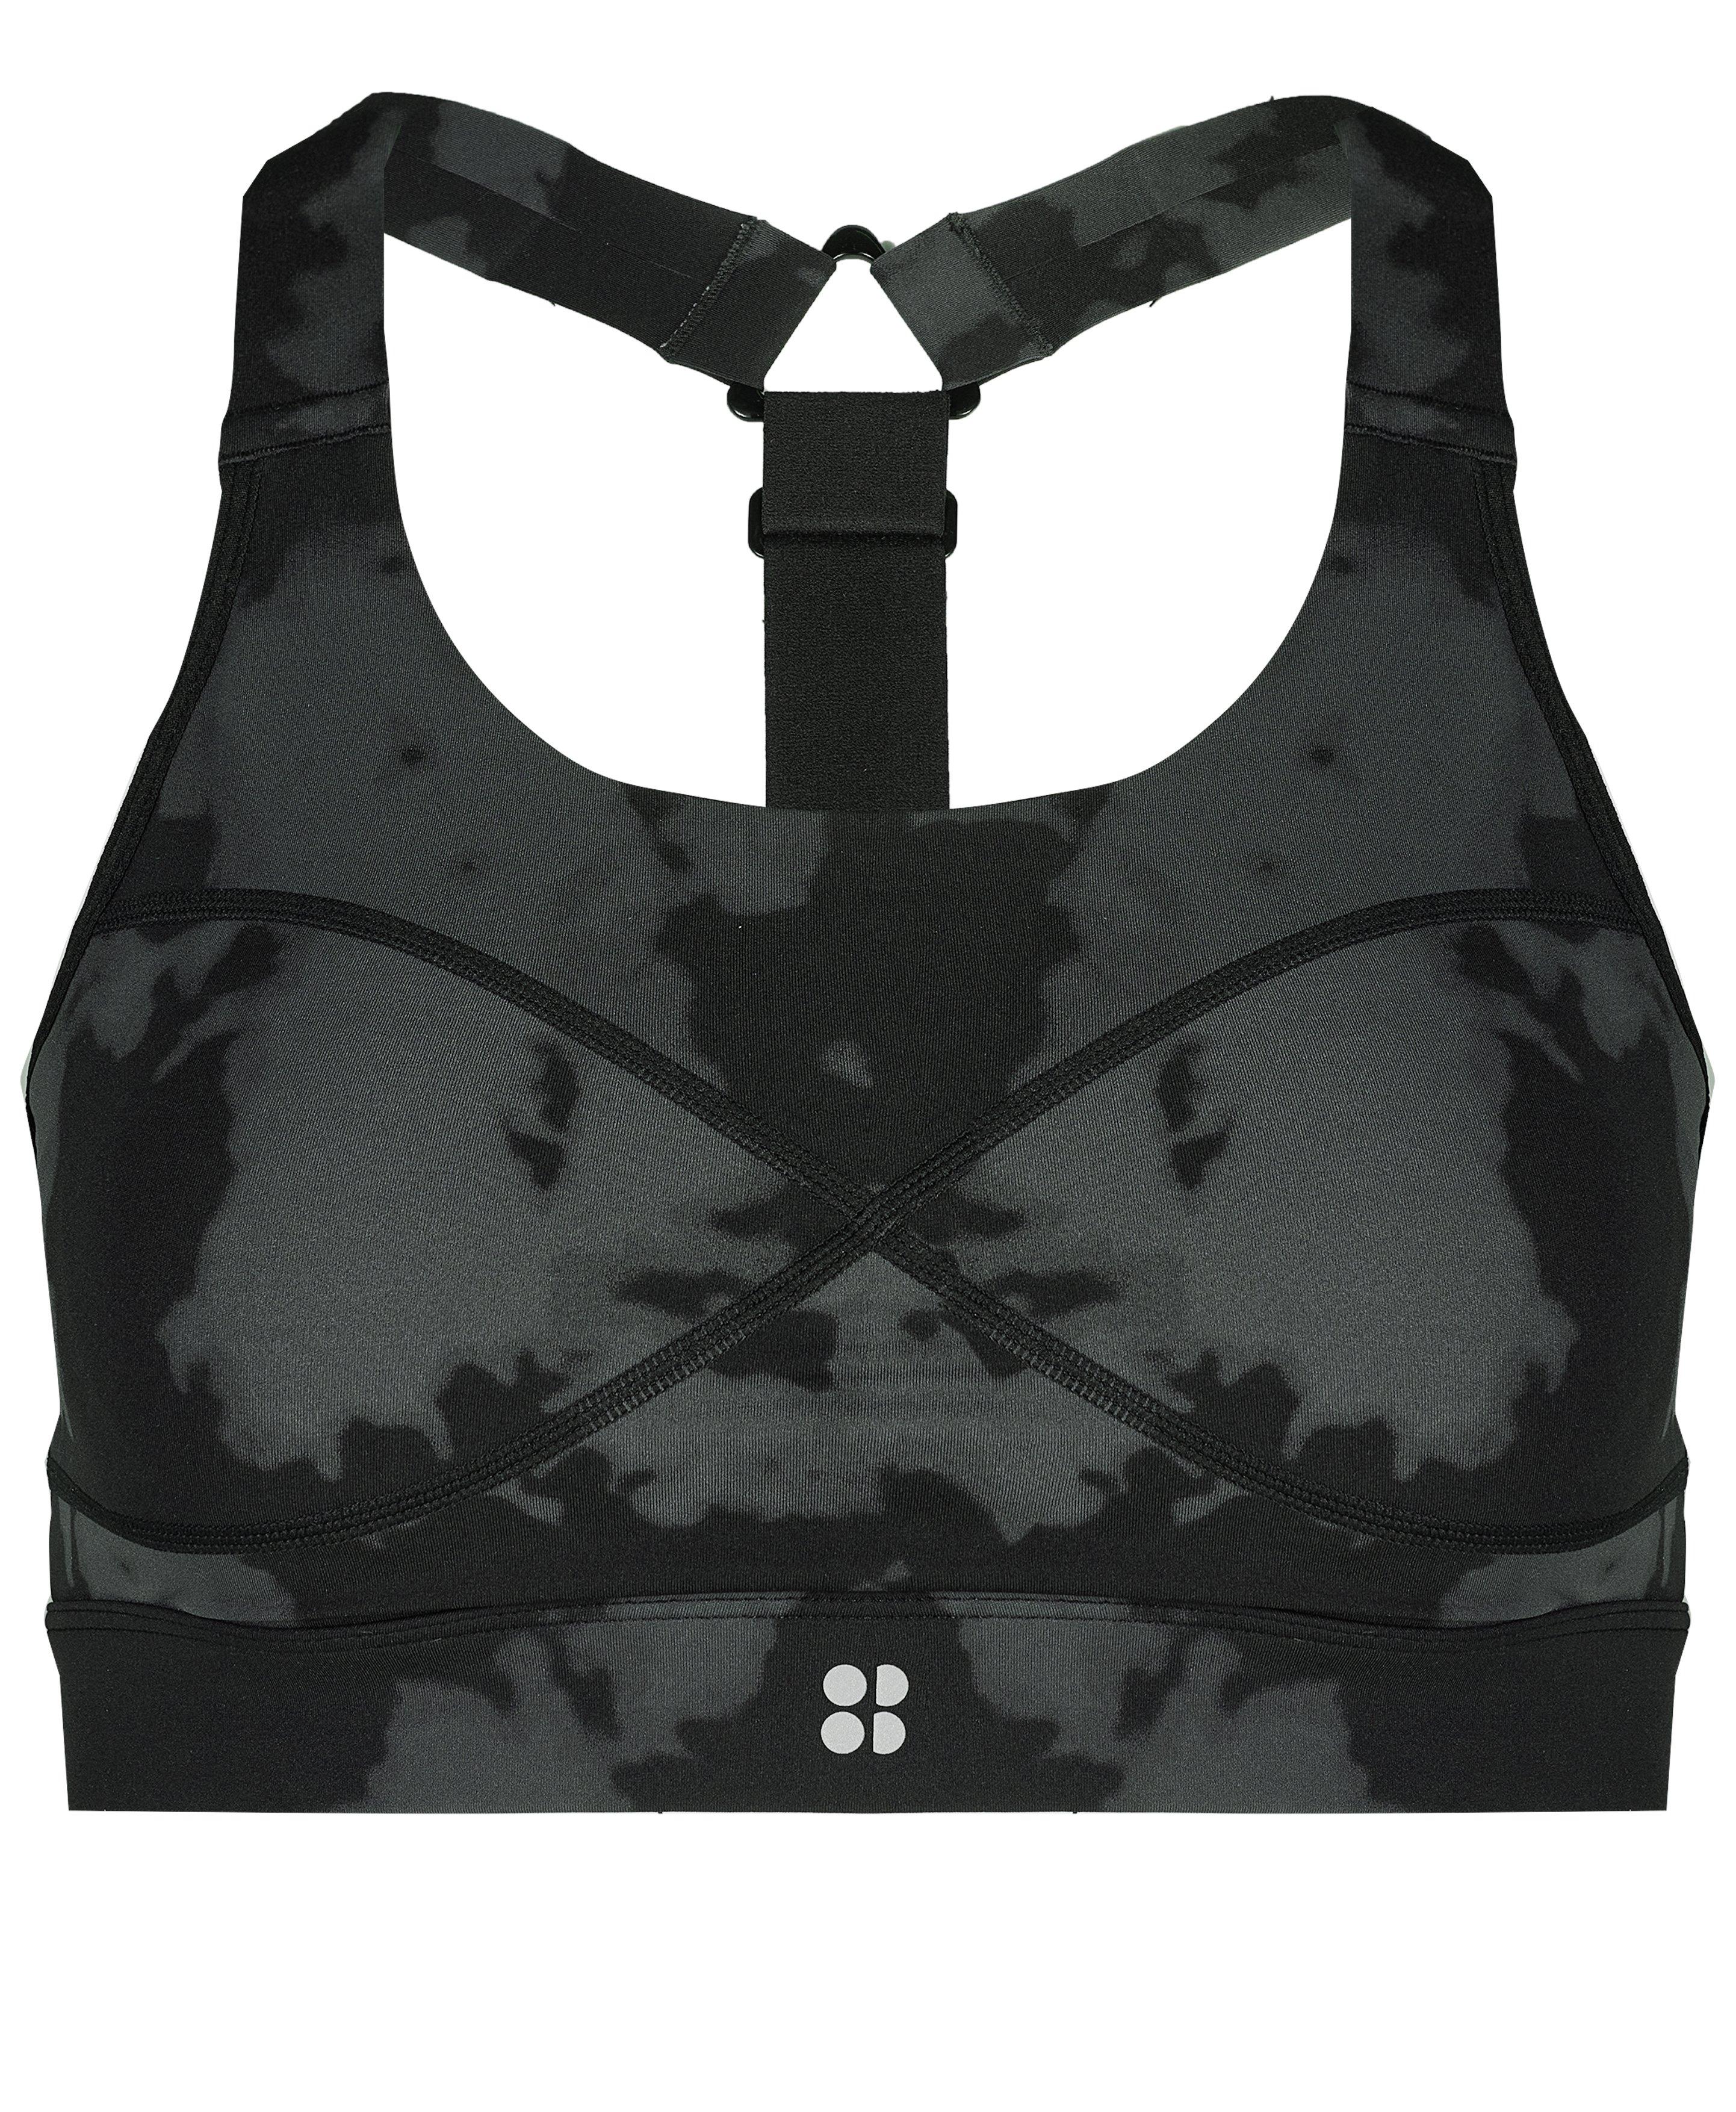 POWERfit Black sports bra – POWERfitwithT